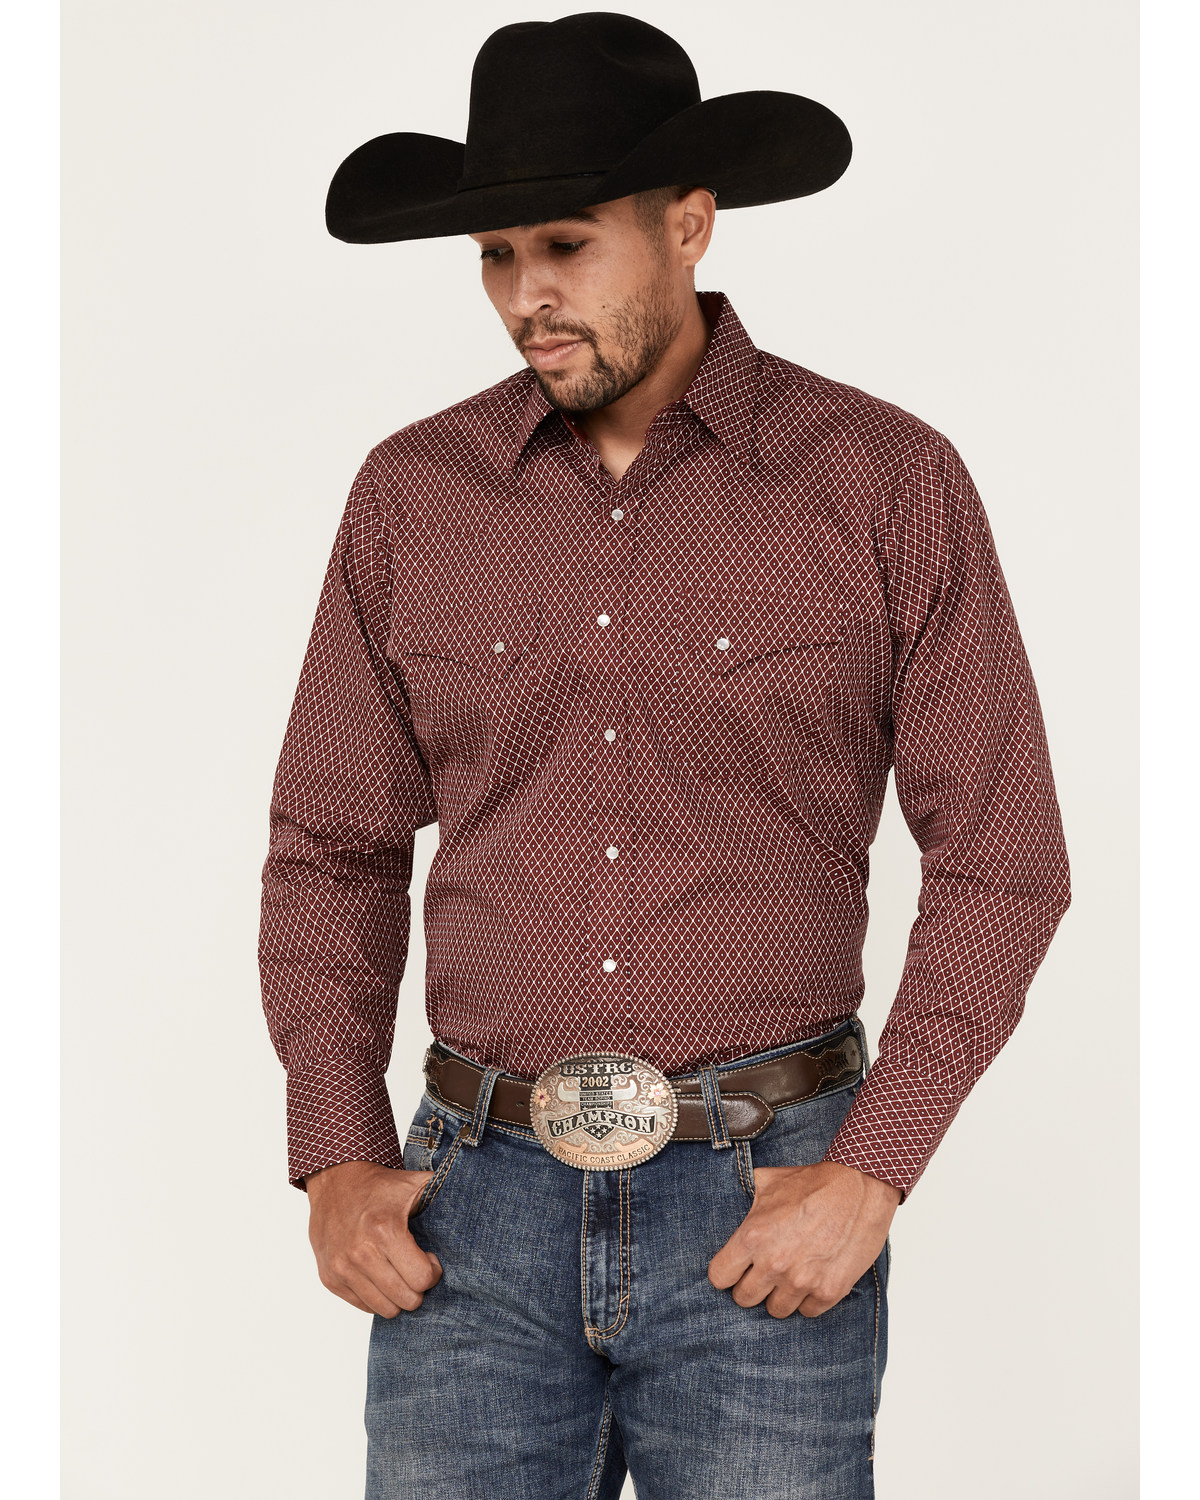 Ely Walker Men's Diamond Geo Print Long Sleeve Pearl Snap Western Shirt